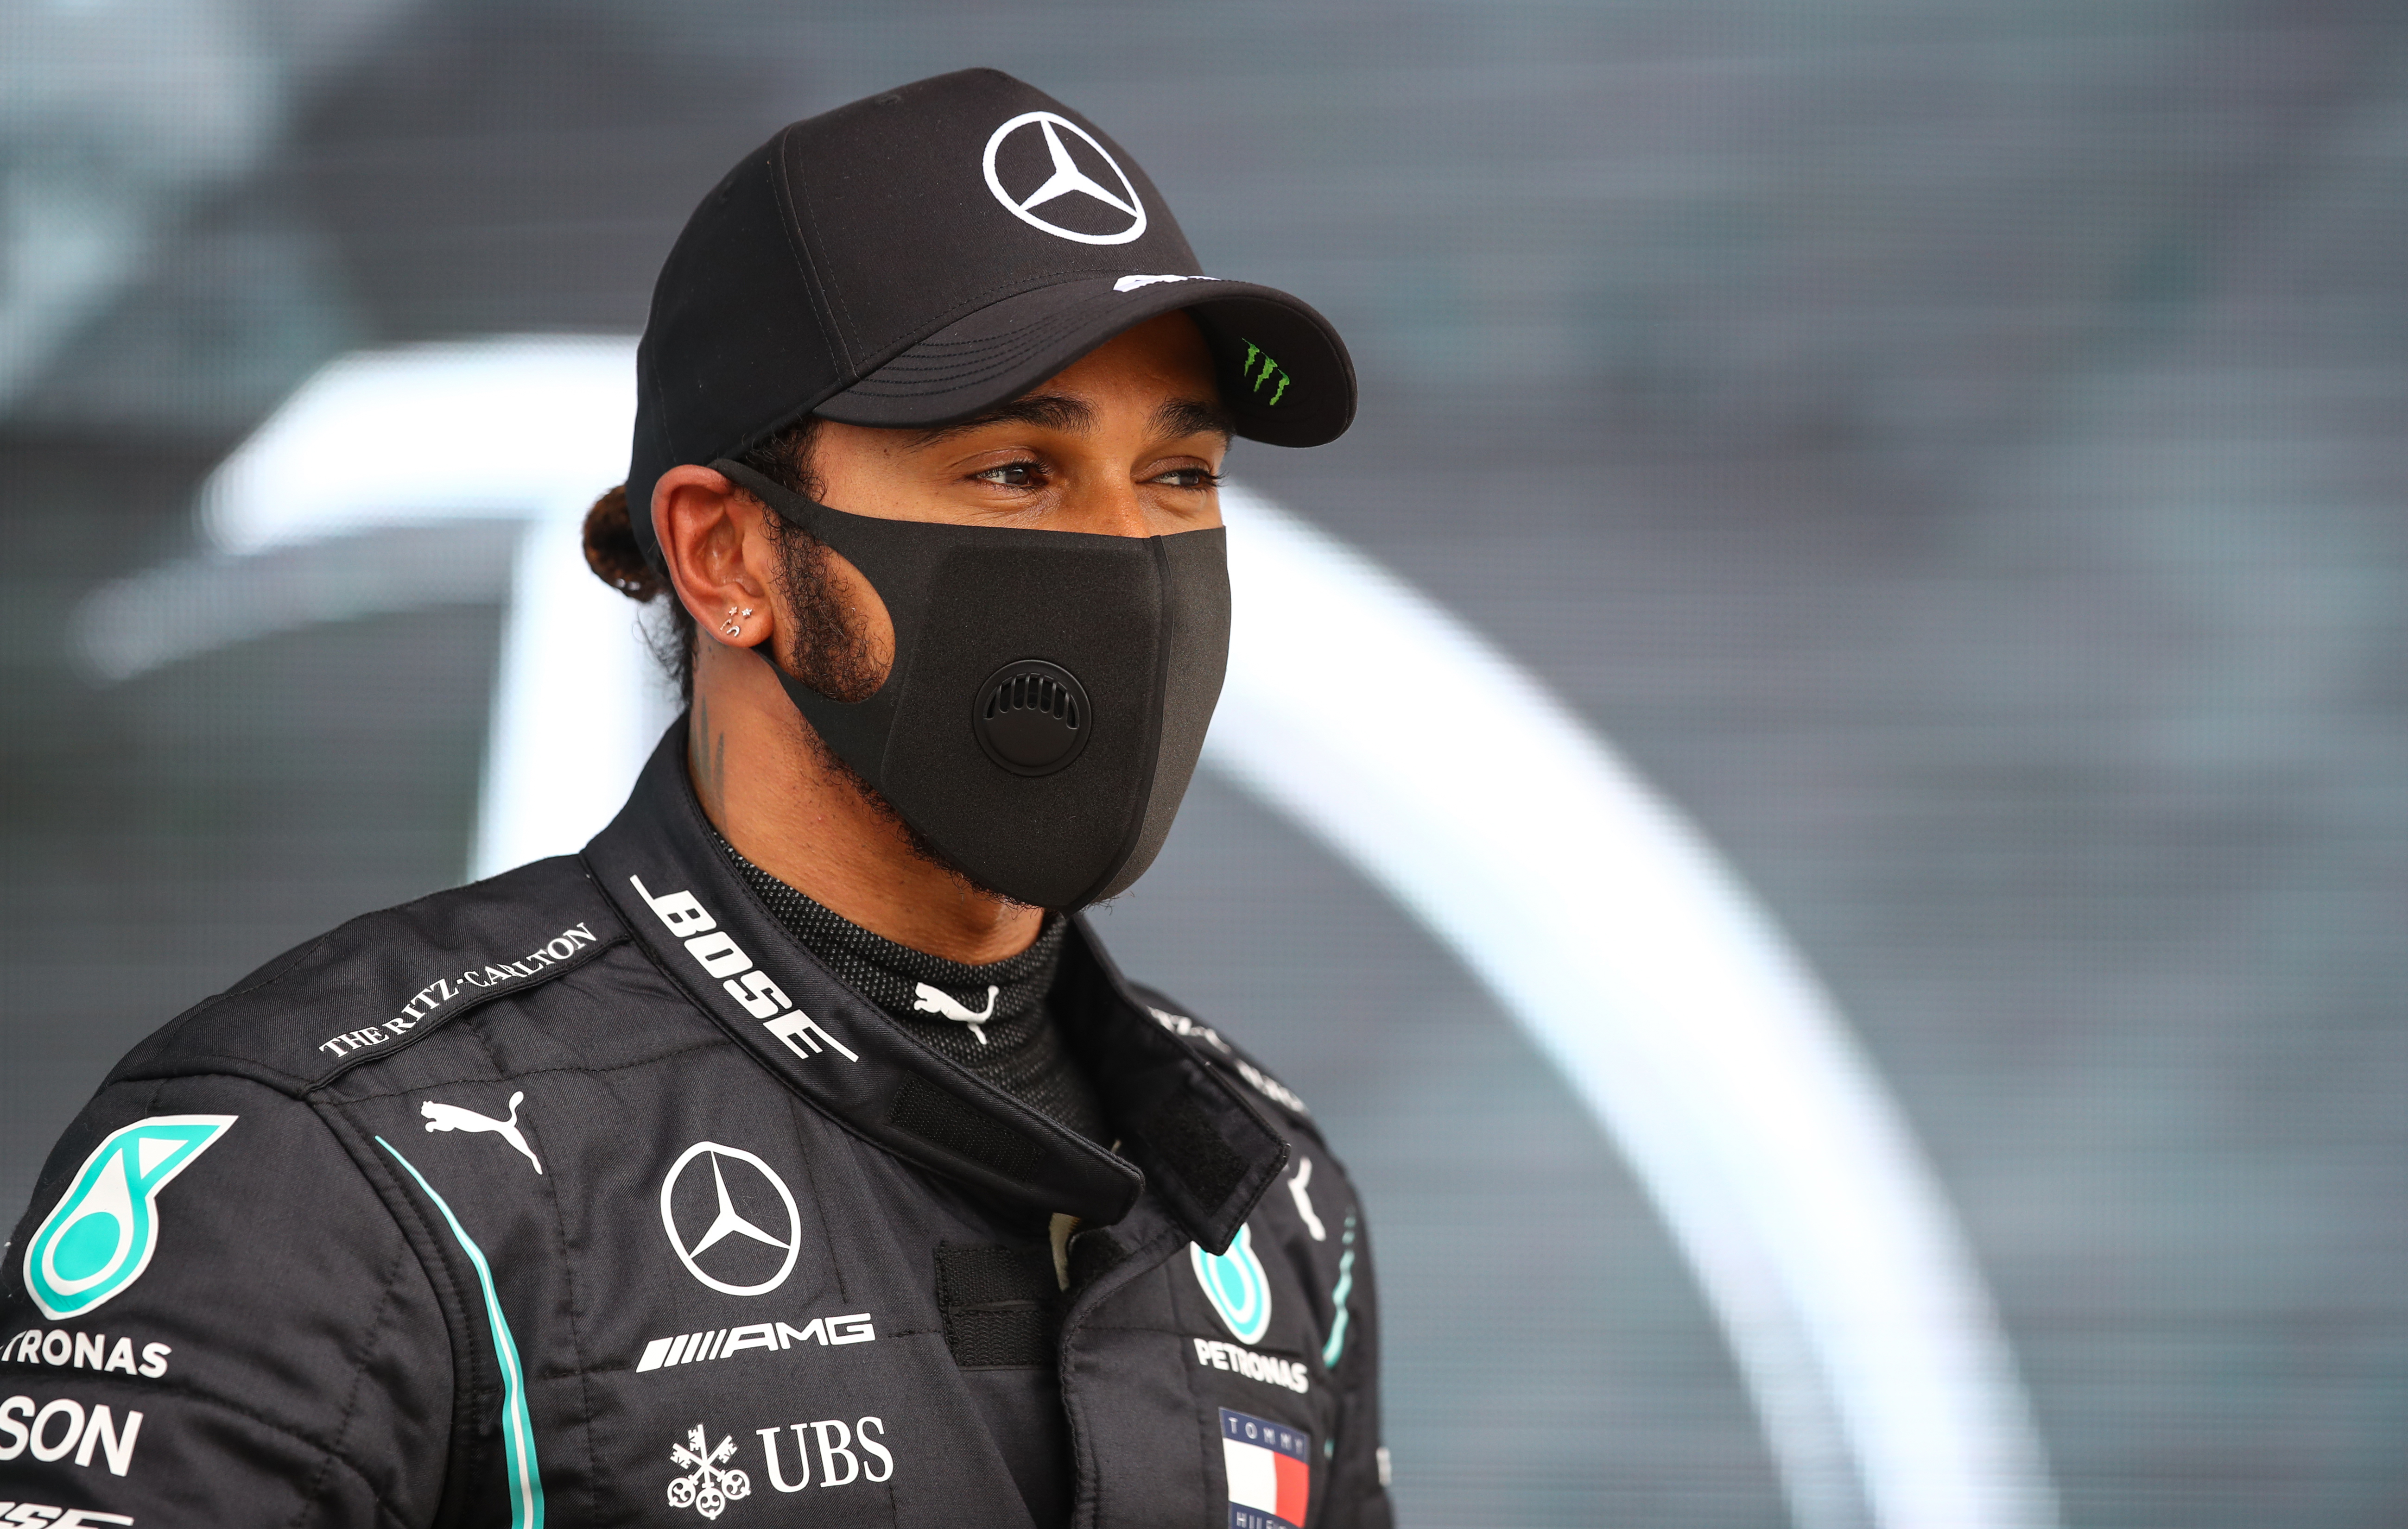 El secreto que Lewis Hamilton reveló después de 10 años: “Ha llegado el momento de compartirlo con ustedes”